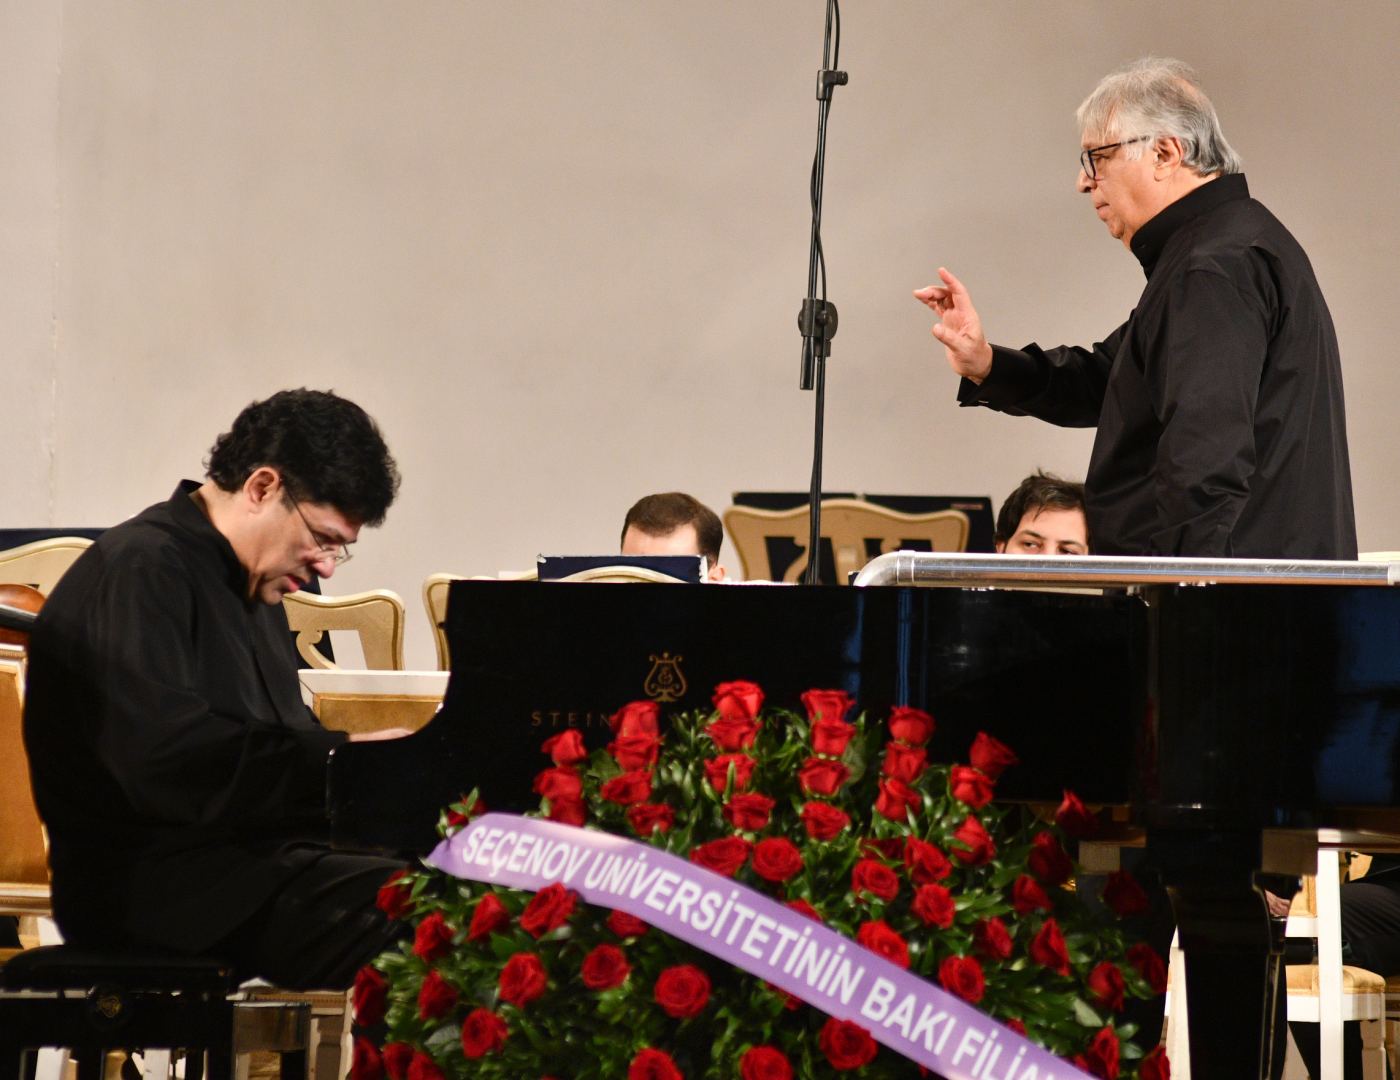 Музыка для сердца и ума: на сцене Фархад Бадалбейли и Мурад Адыгезалзаде (ФОТО/ВИДЕО)